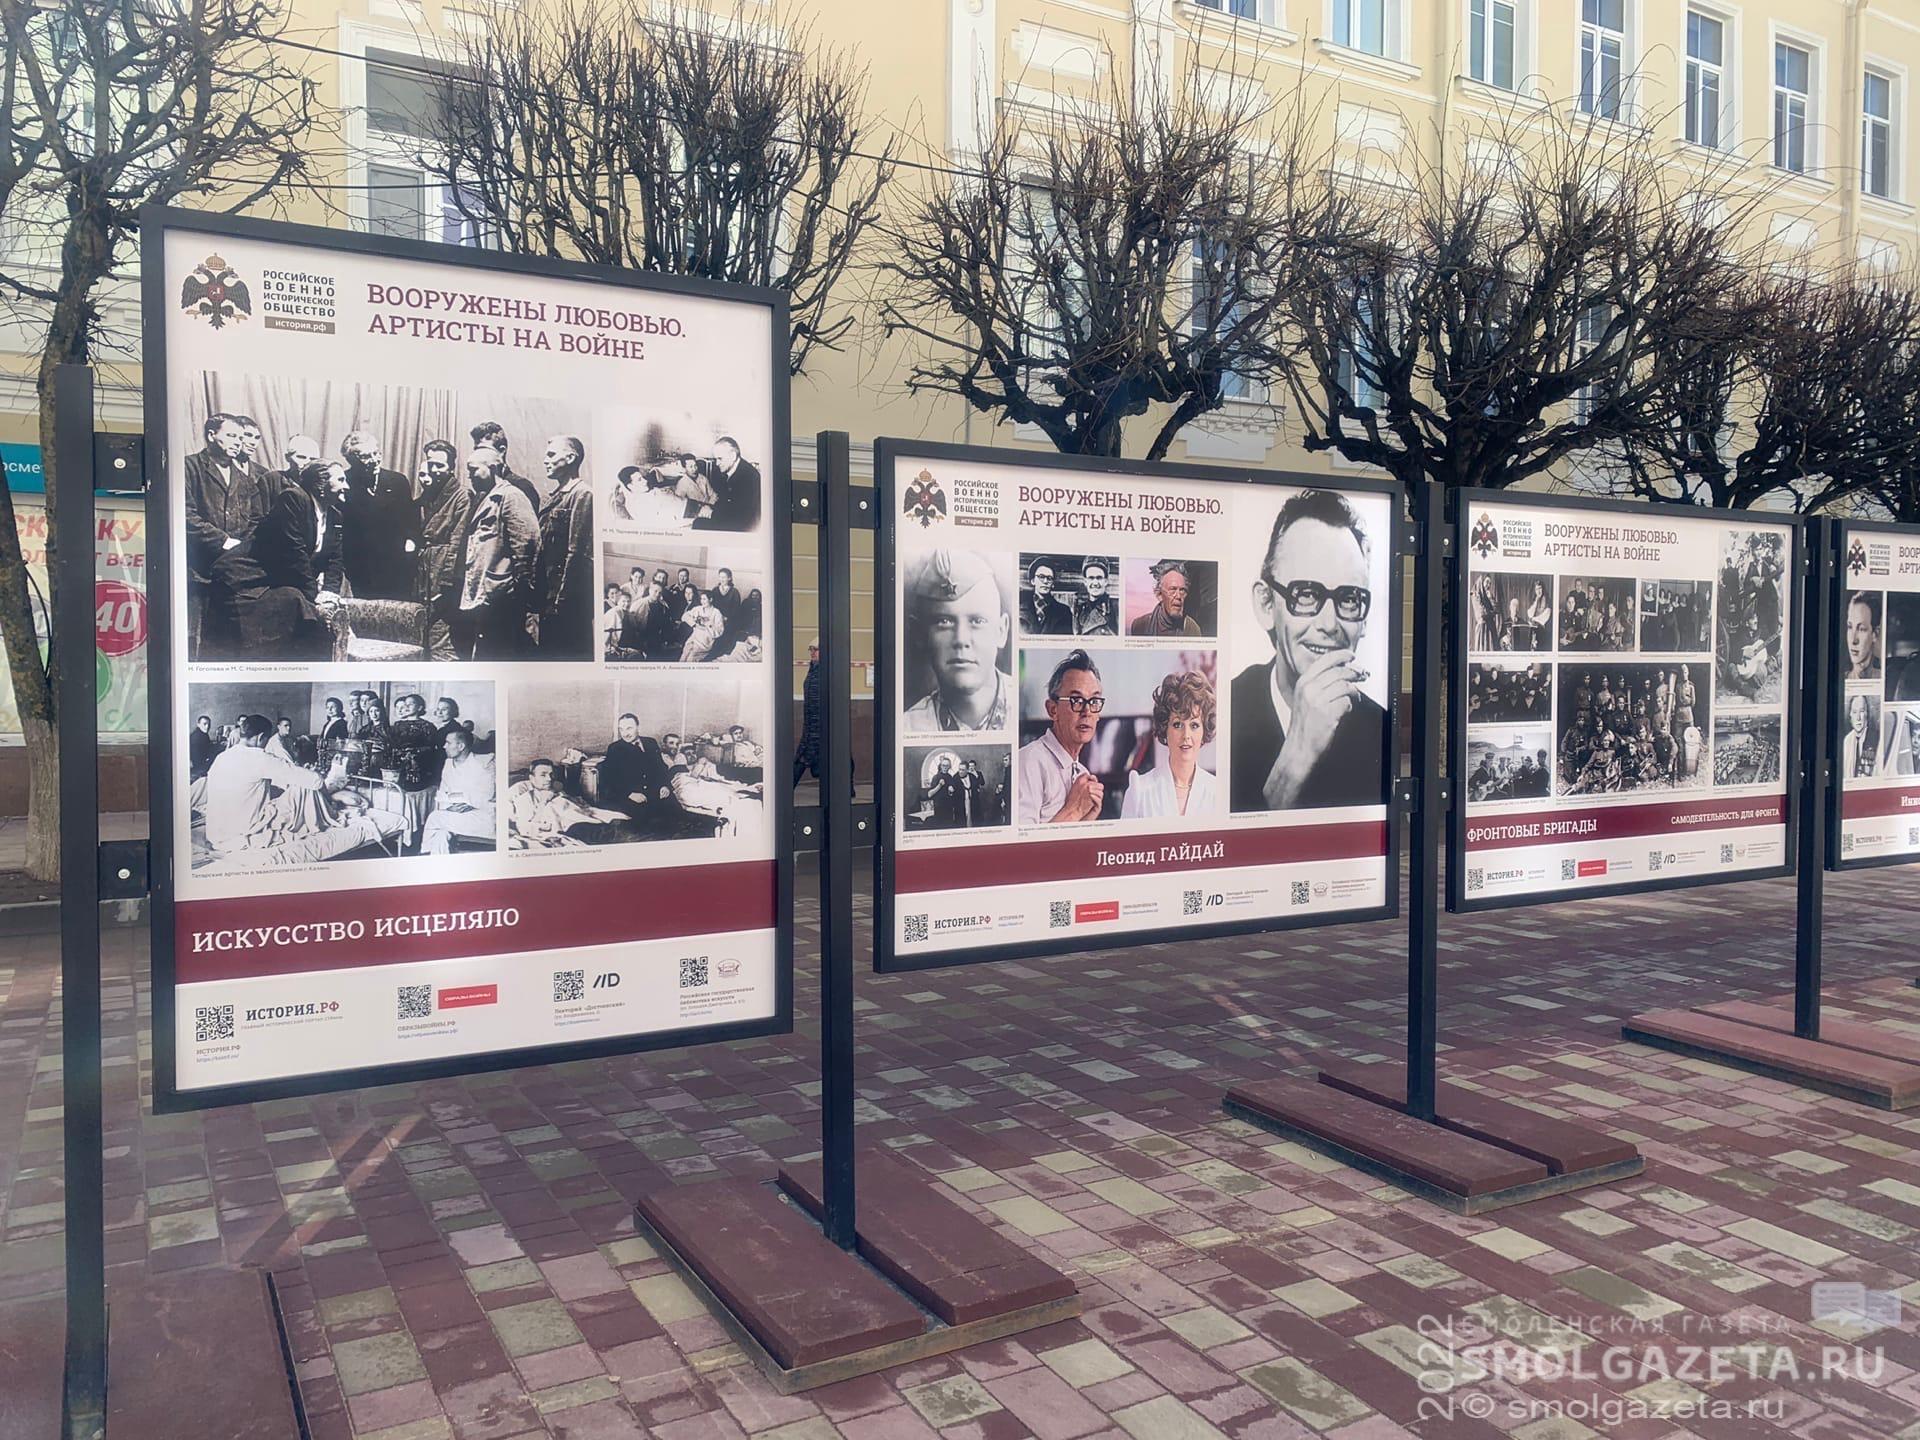 В Смоленске на улице Ленина открылась фотовыставка «Вооружены любовью. Артисты на войне»